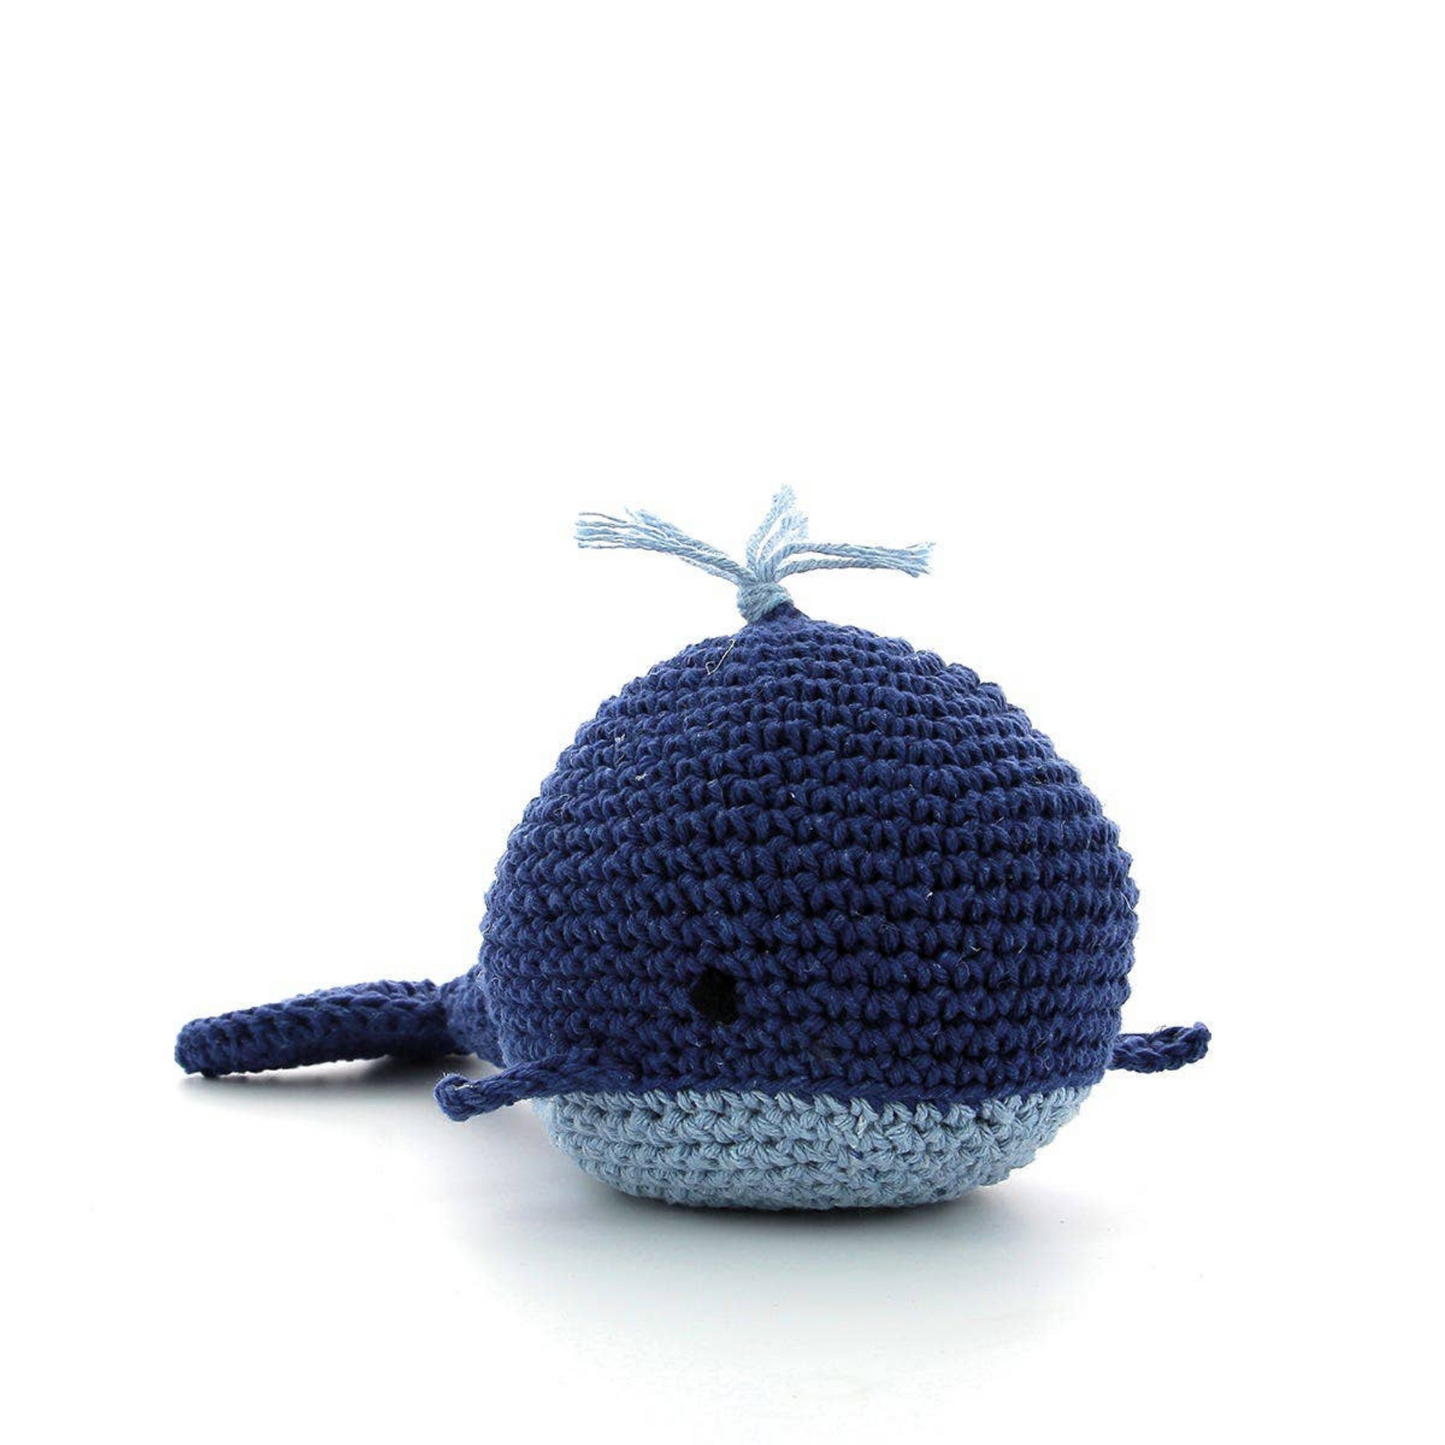 Pepper The Whale Crochet Kit